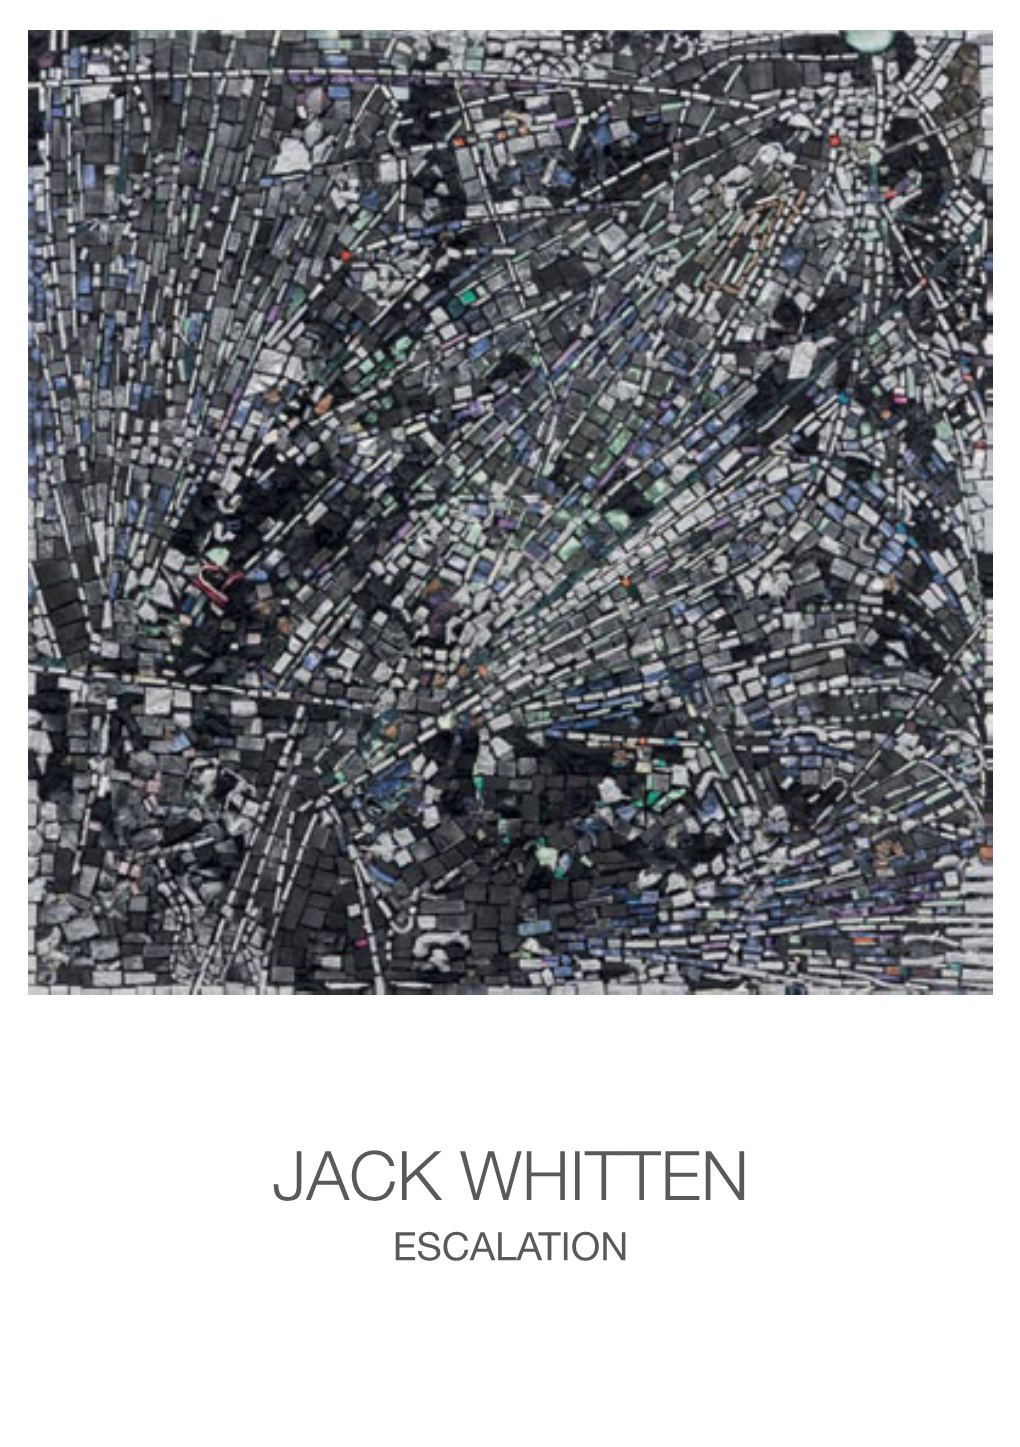 JACK WHITTEN ESCALATION JACK WHITTEN in 1990 Ontdekte Whitten Dat De Acrylvellen Die Werden Gebruikt Als Collage, in Tesserae Konden Worden Versneden